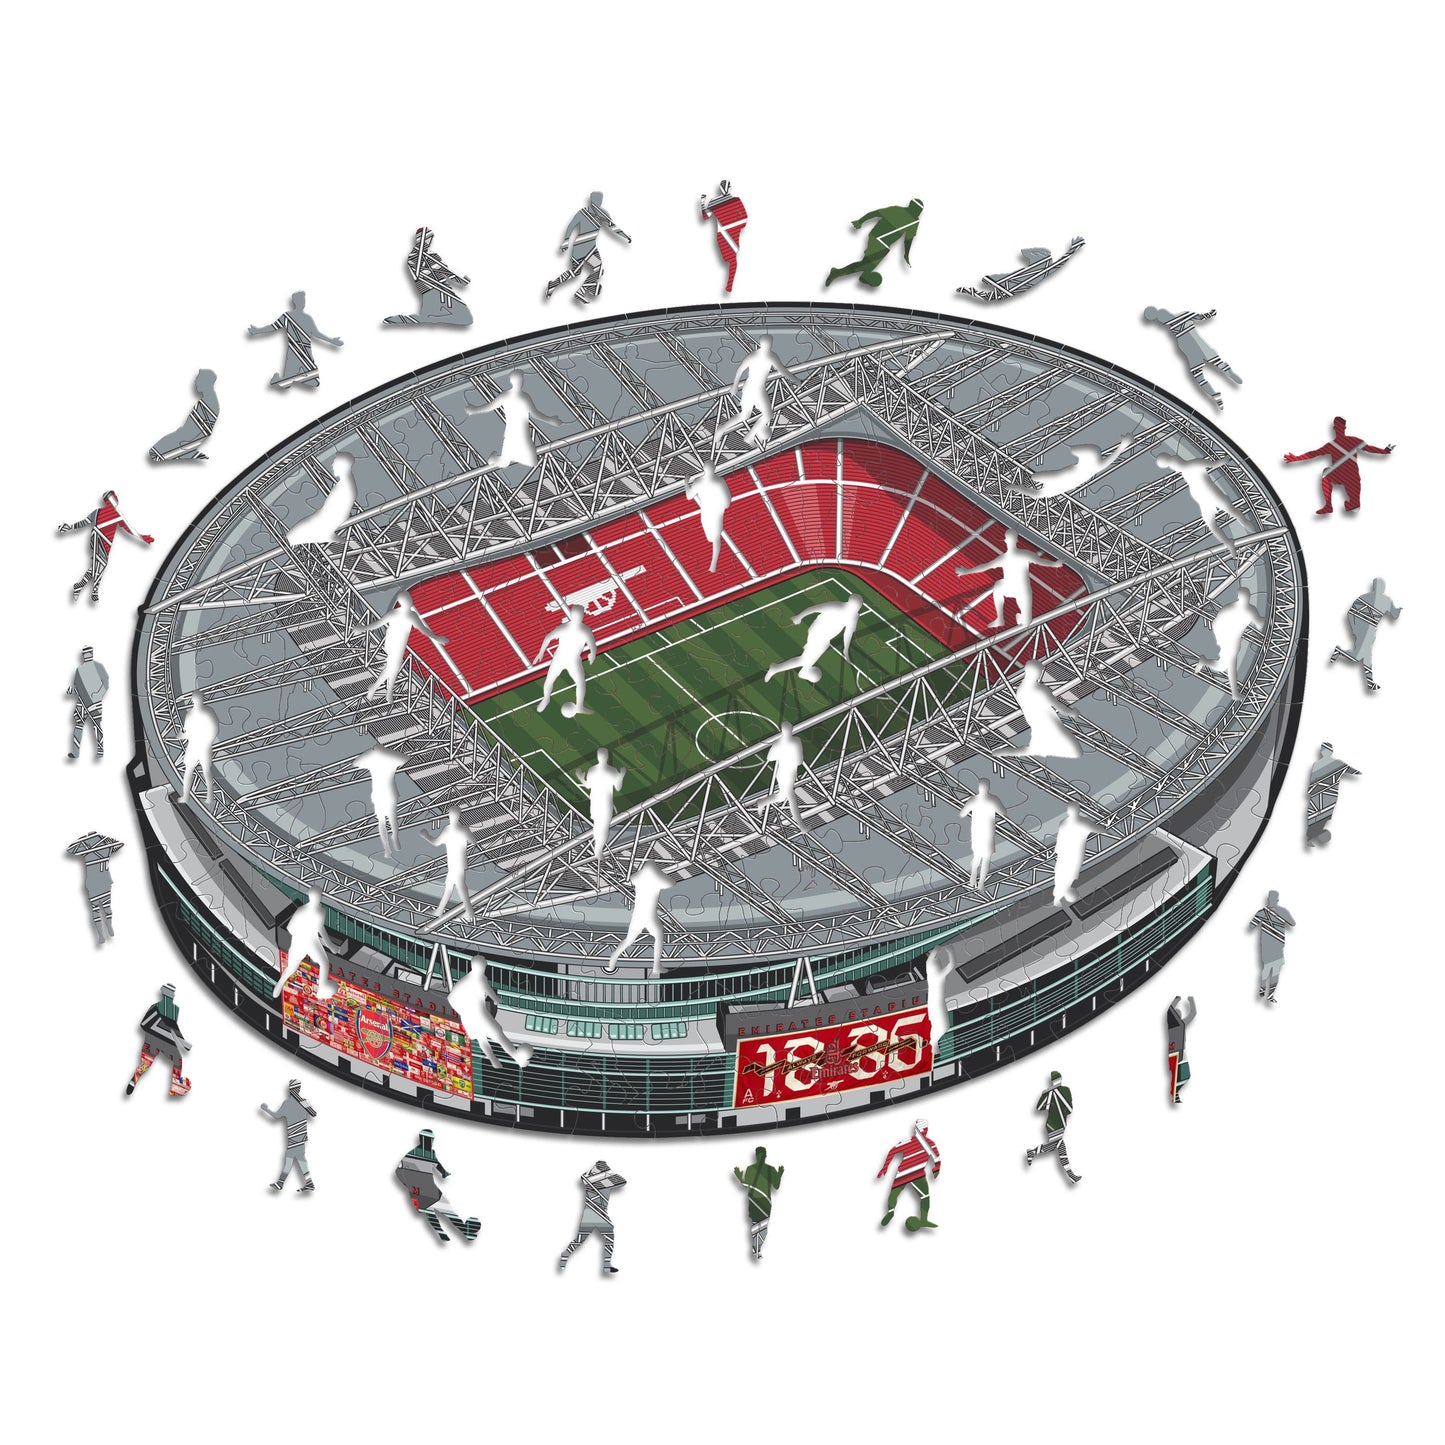 2 PACK Arsenal FC® Logo + Emirates Stadium